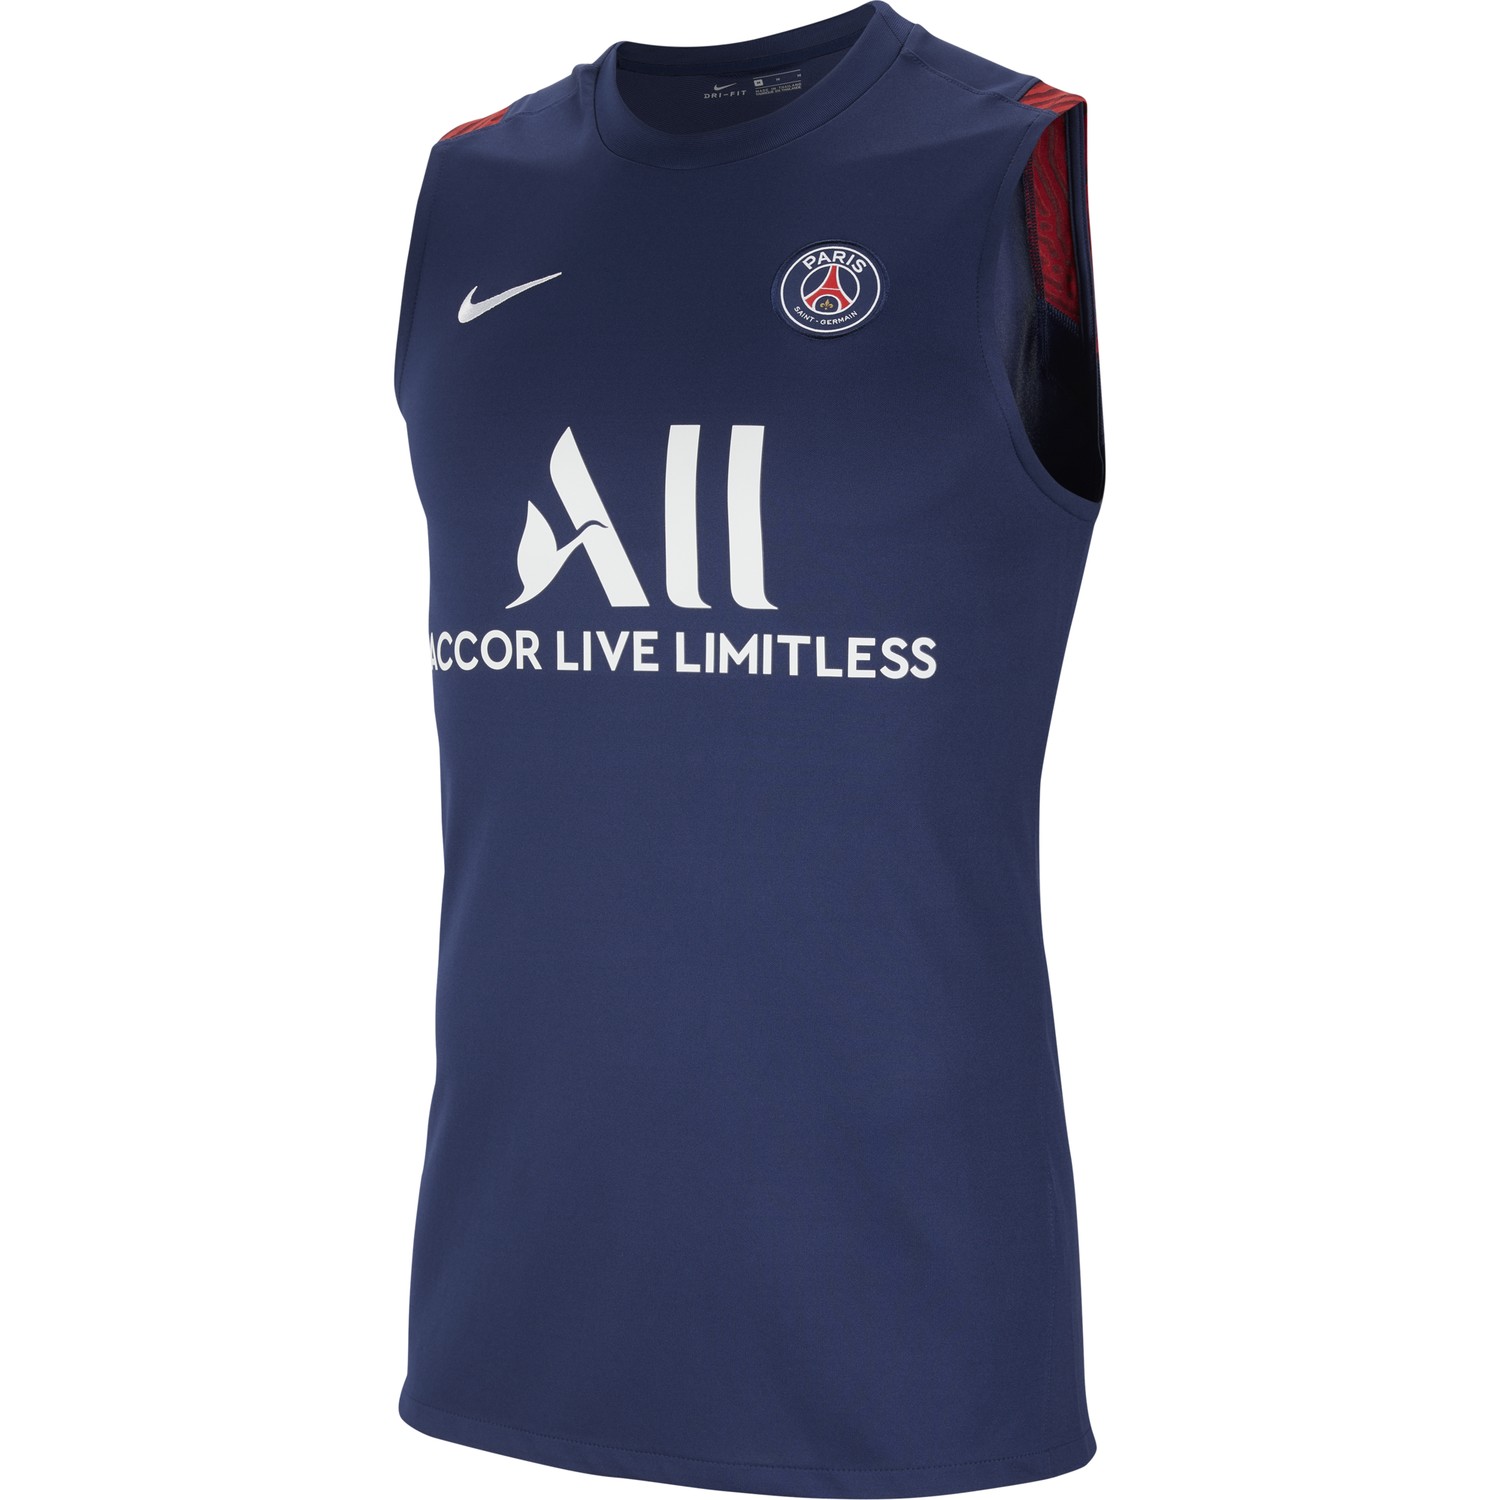 2020-2021 PSG T-shirt dentraînement de football sans manches bleu marine